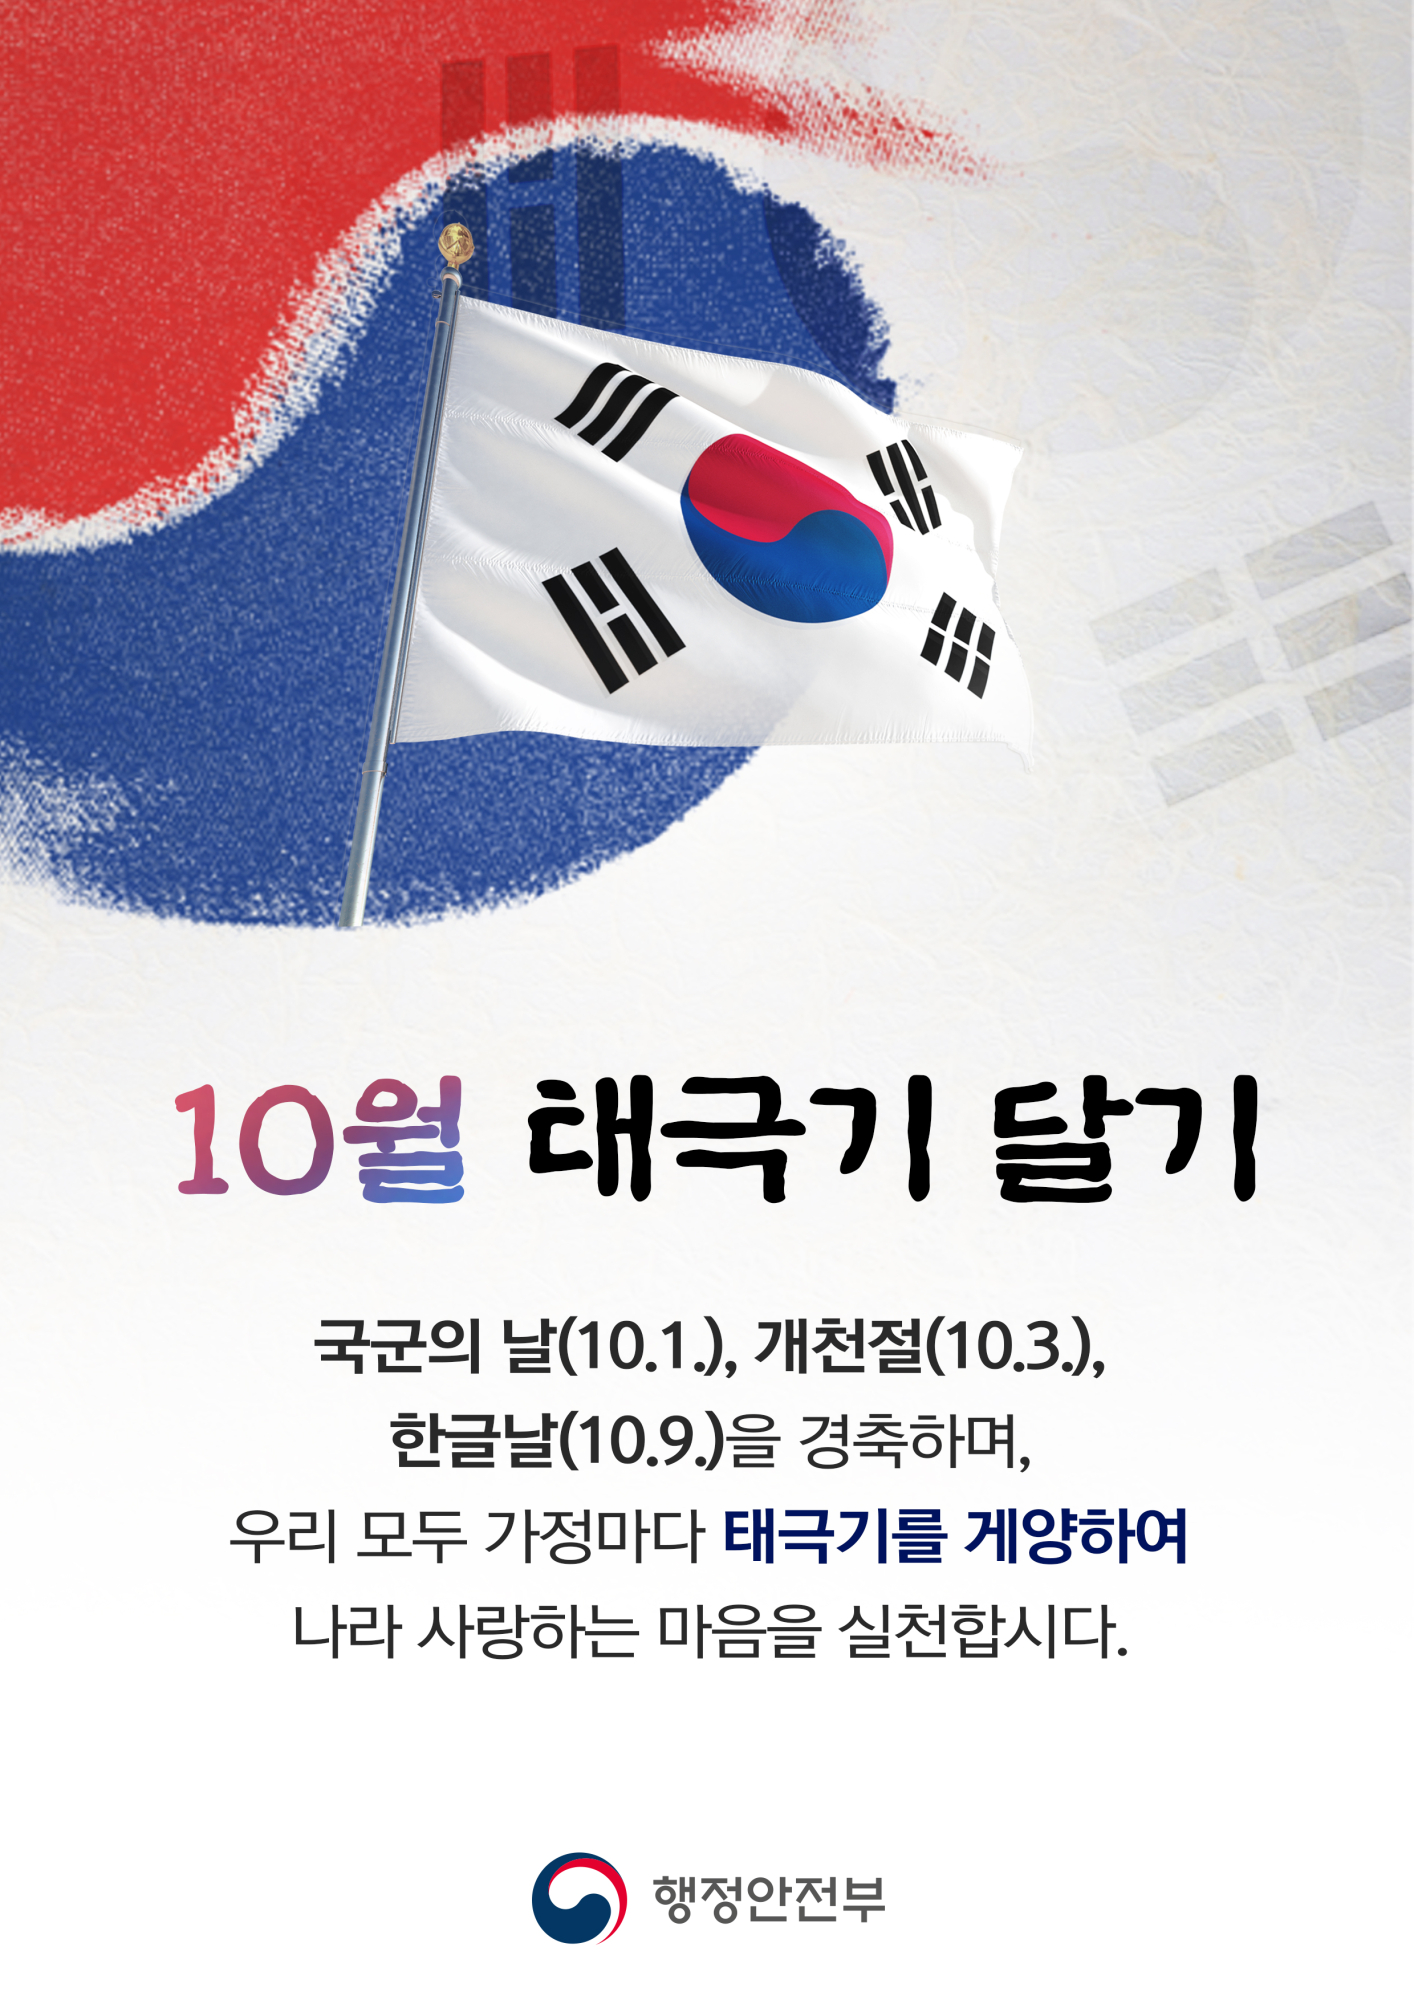 충청북도교육청 총무과_10월 태극기달기 포스터